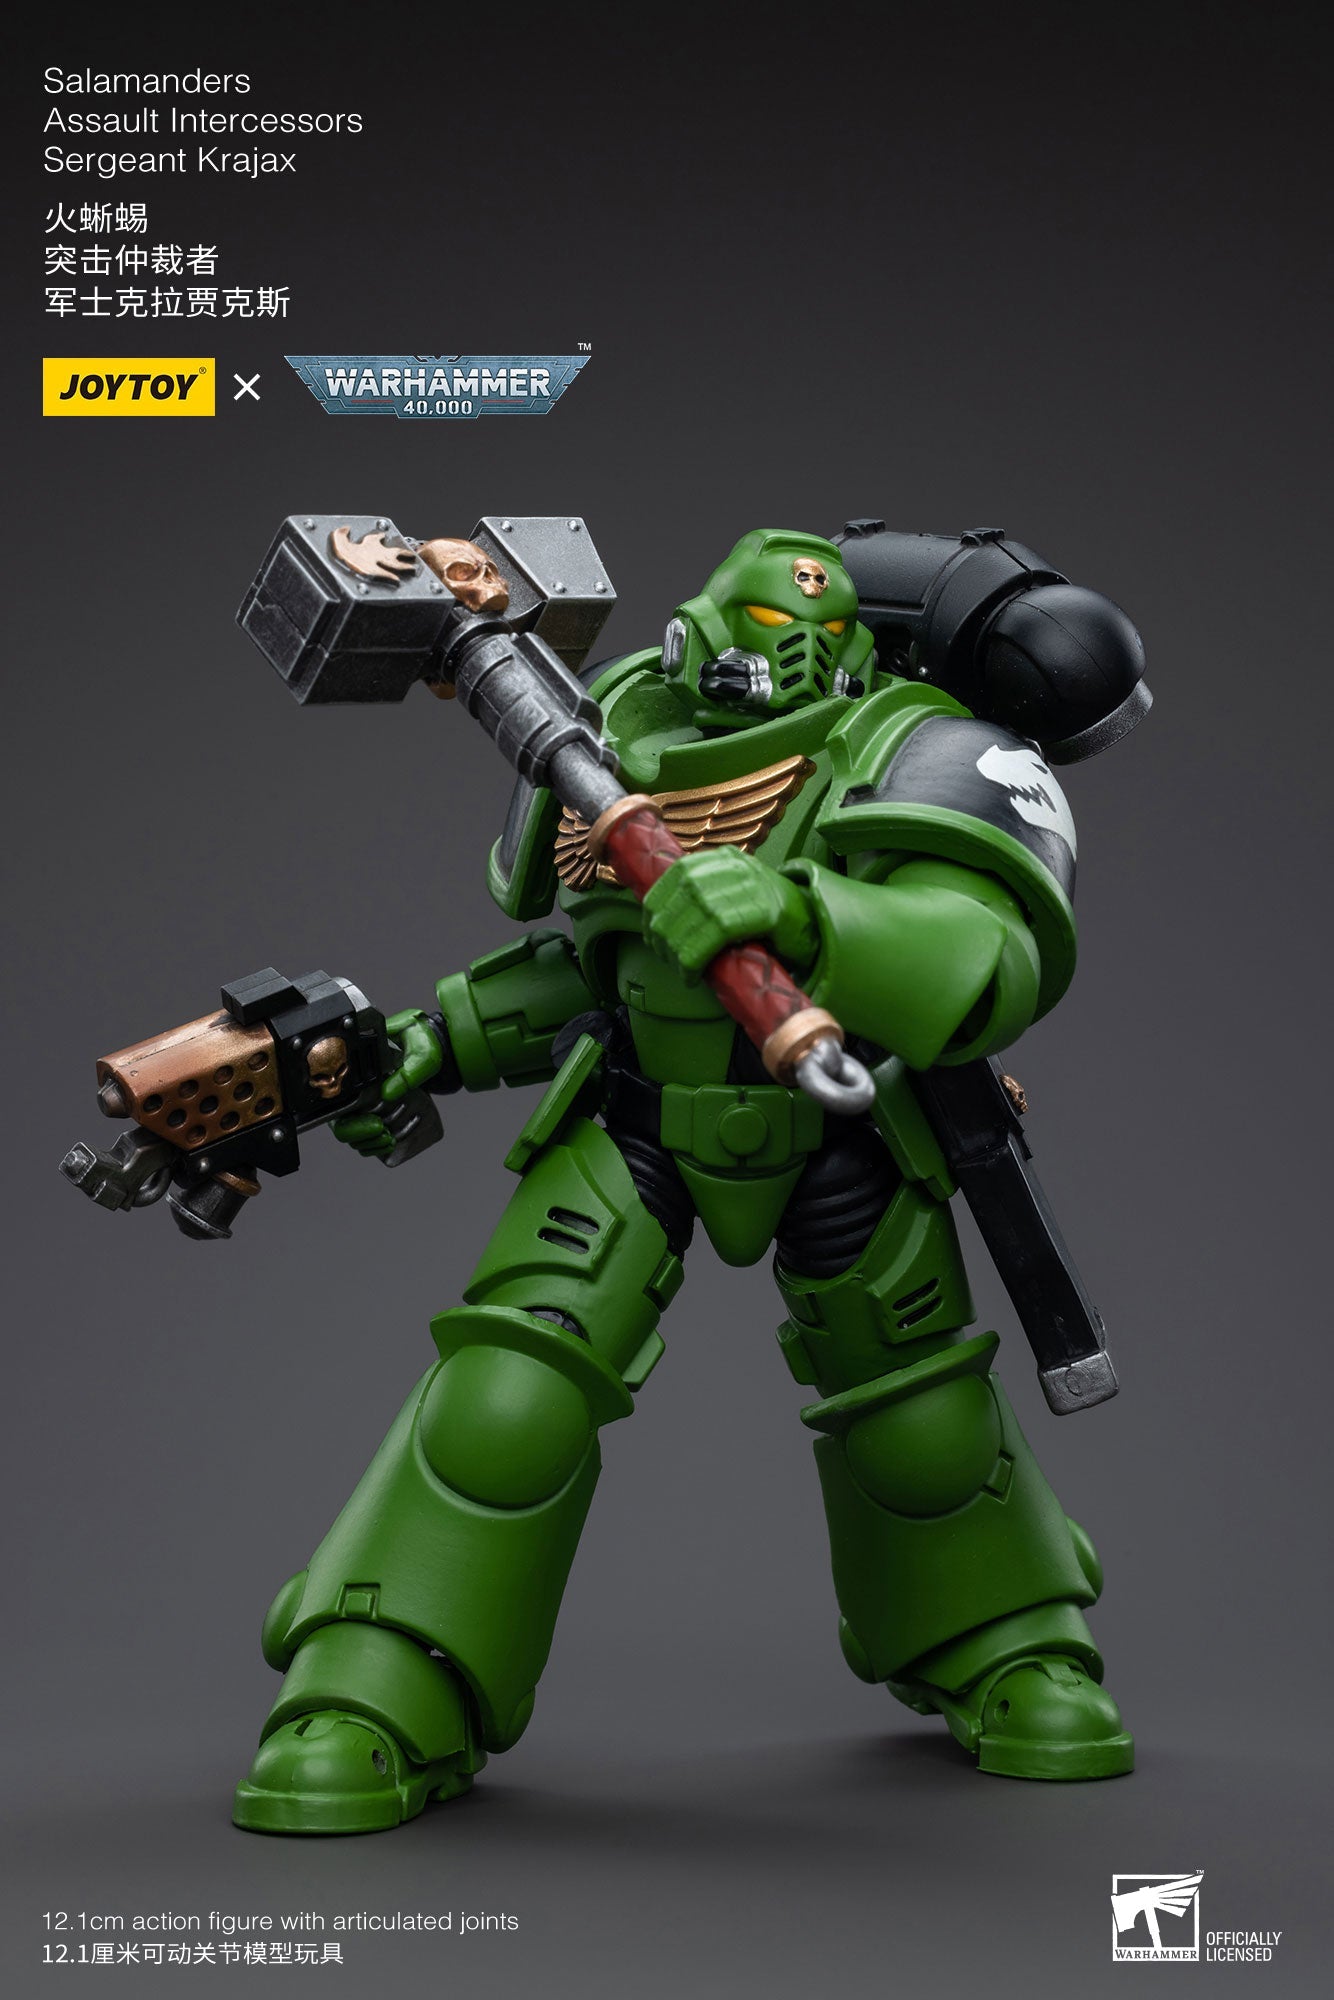 Salamanders Intercessors Sergeant Krajax - Warhammer 40K Action Figure By JOYTOY